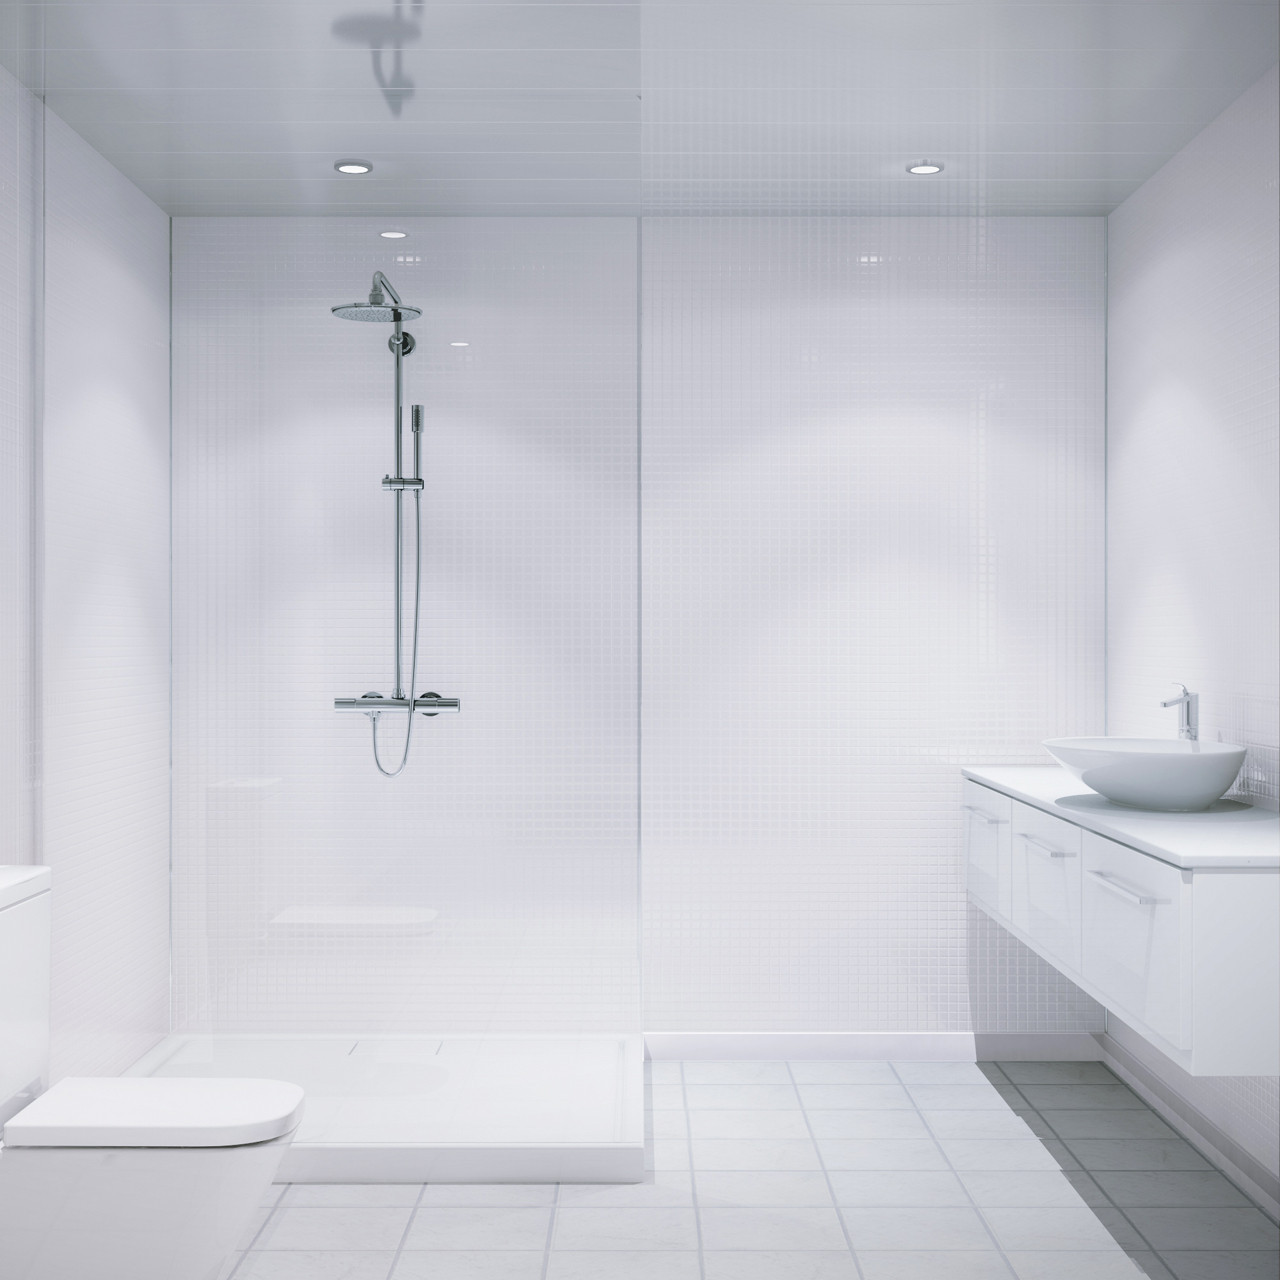 White Bathroom Wall Tiles
 Multipanel White Embossed Tile 2440mm x 1220mm Bathroom